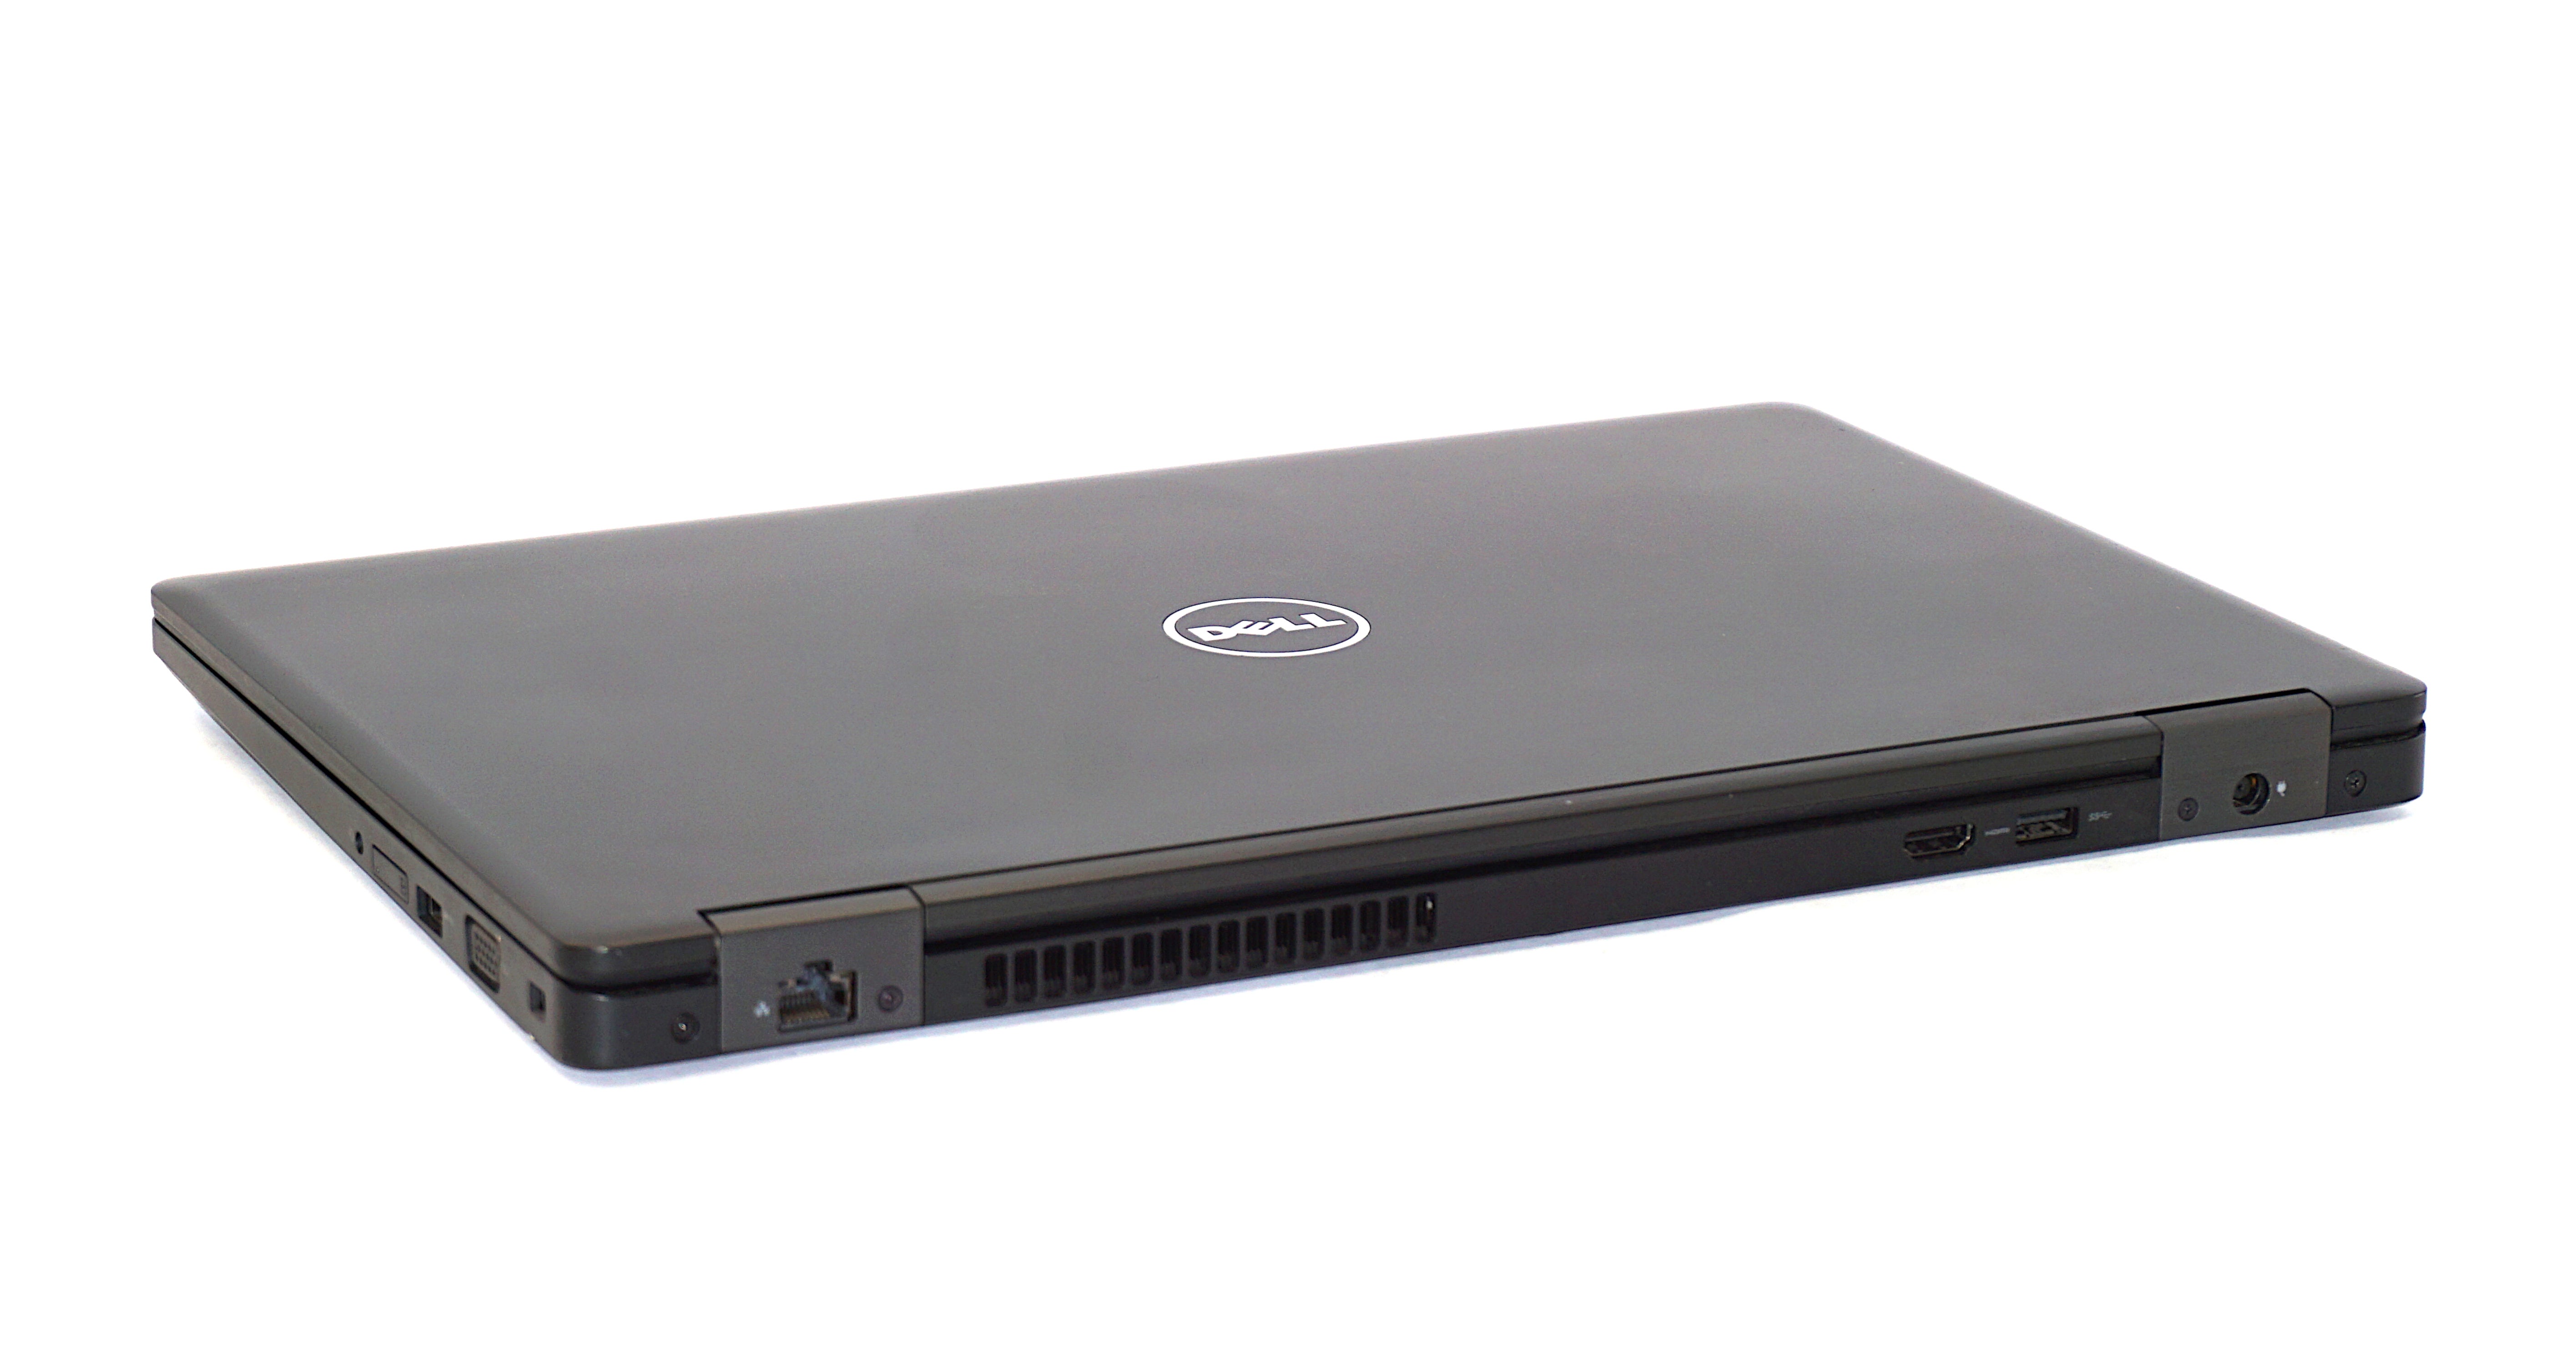 Dell Precision 3520 Laptop, 15.6" Intel Core i7, 16GB RAM, 512GB SSD